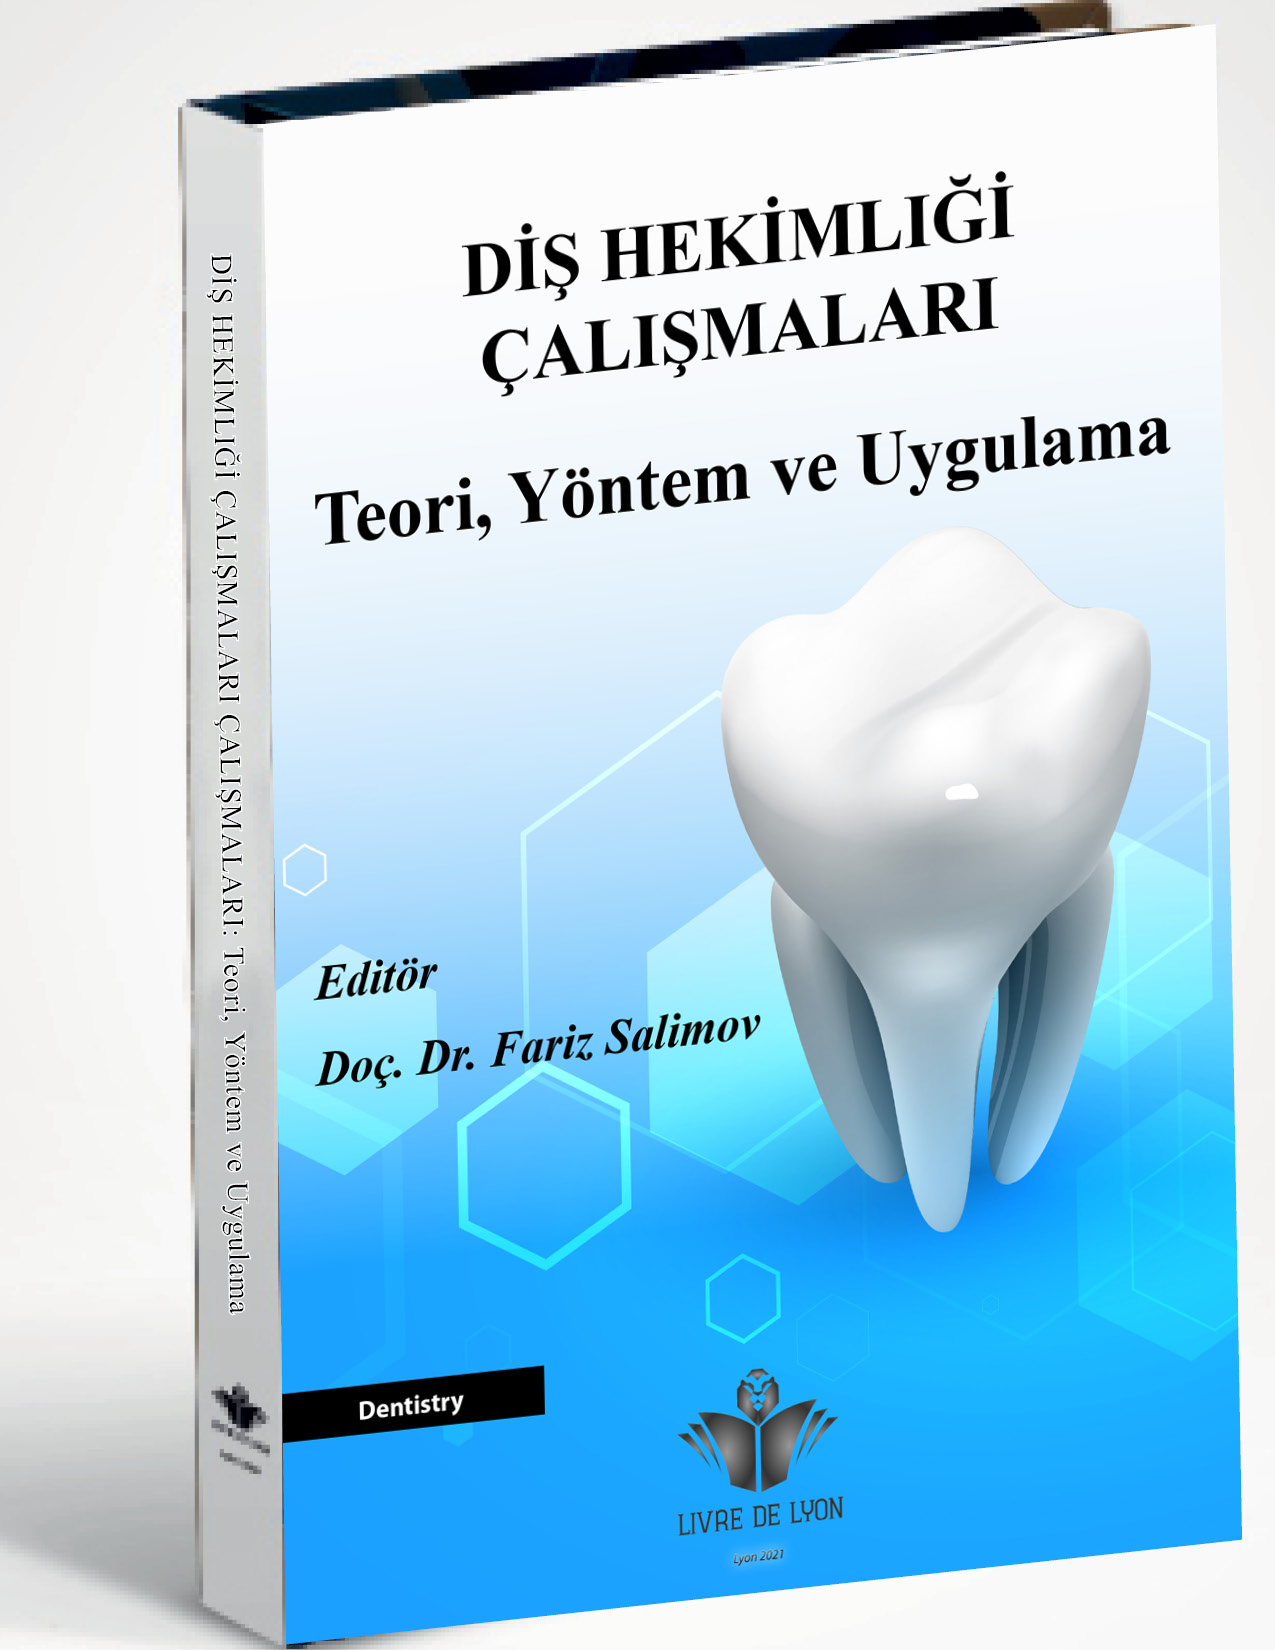 Diş Hekimliği Çalışmaları Teori, Yöntem ve Uygulama